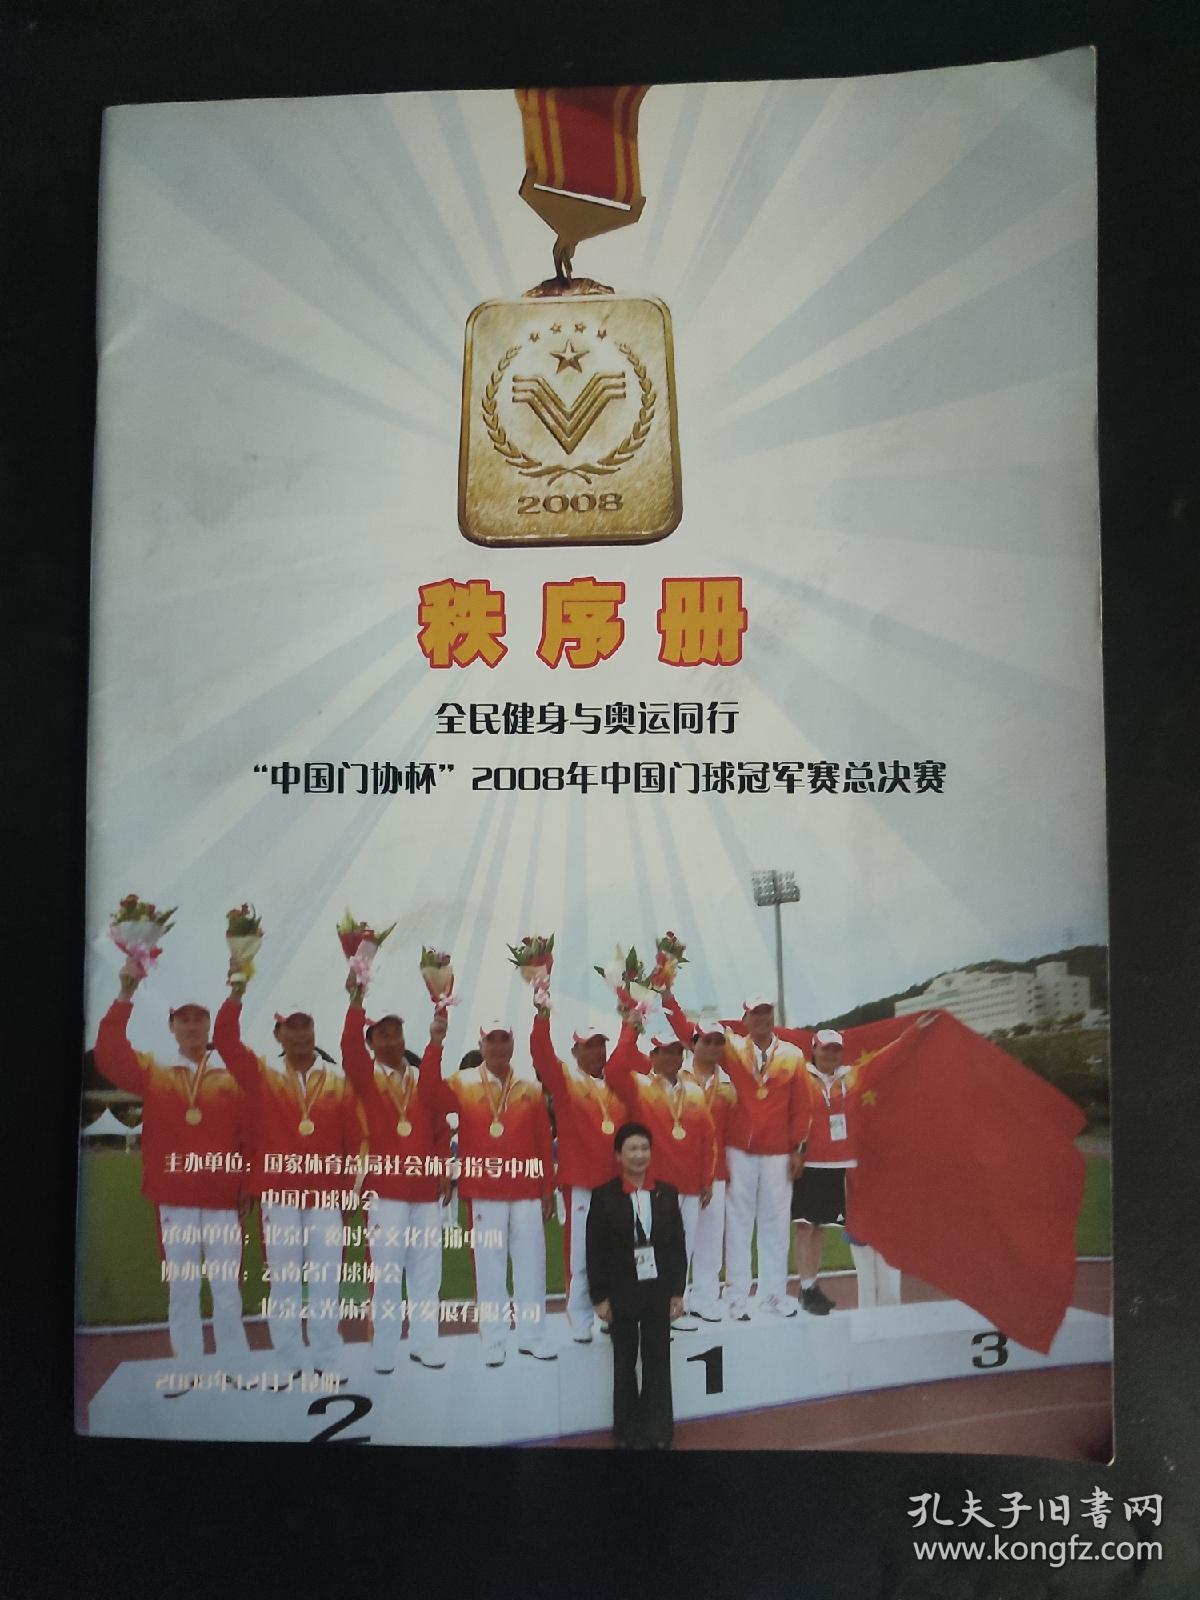 中国门协杯 2008年中国门球冠军赛总决赛秩序册 全民健身与奥运同行 2008年12月 云南昆明